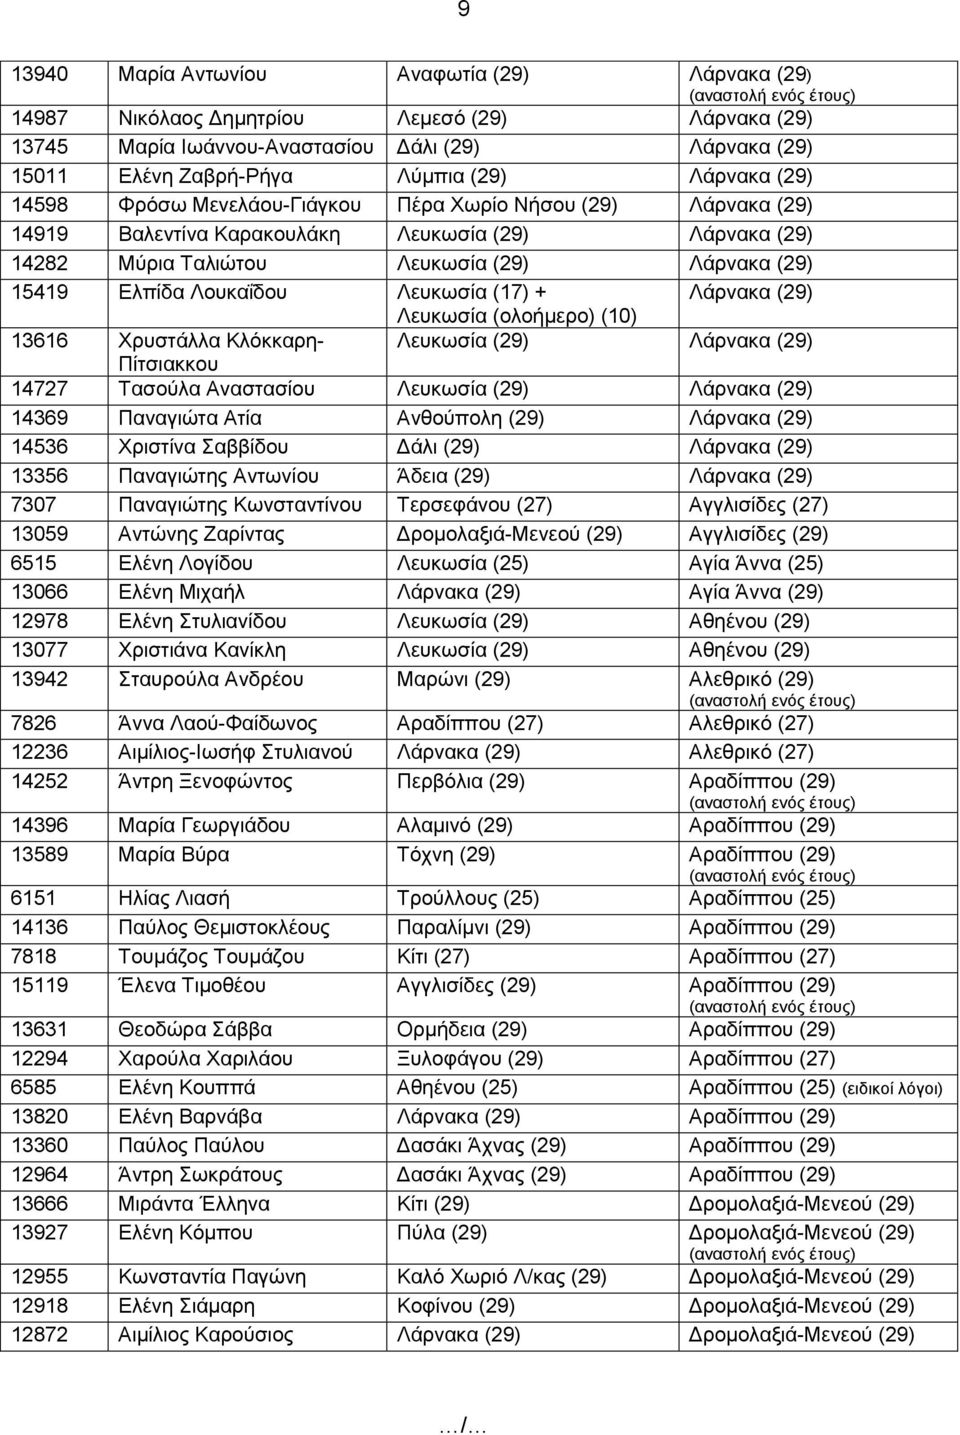 Λευκωσία (17) + Λάρνακα (29) Λευκωσία (ολοήμερο) (10) 13616 Χρυστάλλα Κλόκκαρη- Λευκωσία (29) Λάρνακα (29) Πίτσιακκου 14727 Τασούλα Αναστασίου Λευκωσία (29) Λάρνακα (29) 14369 Παναγιώτα Ατία